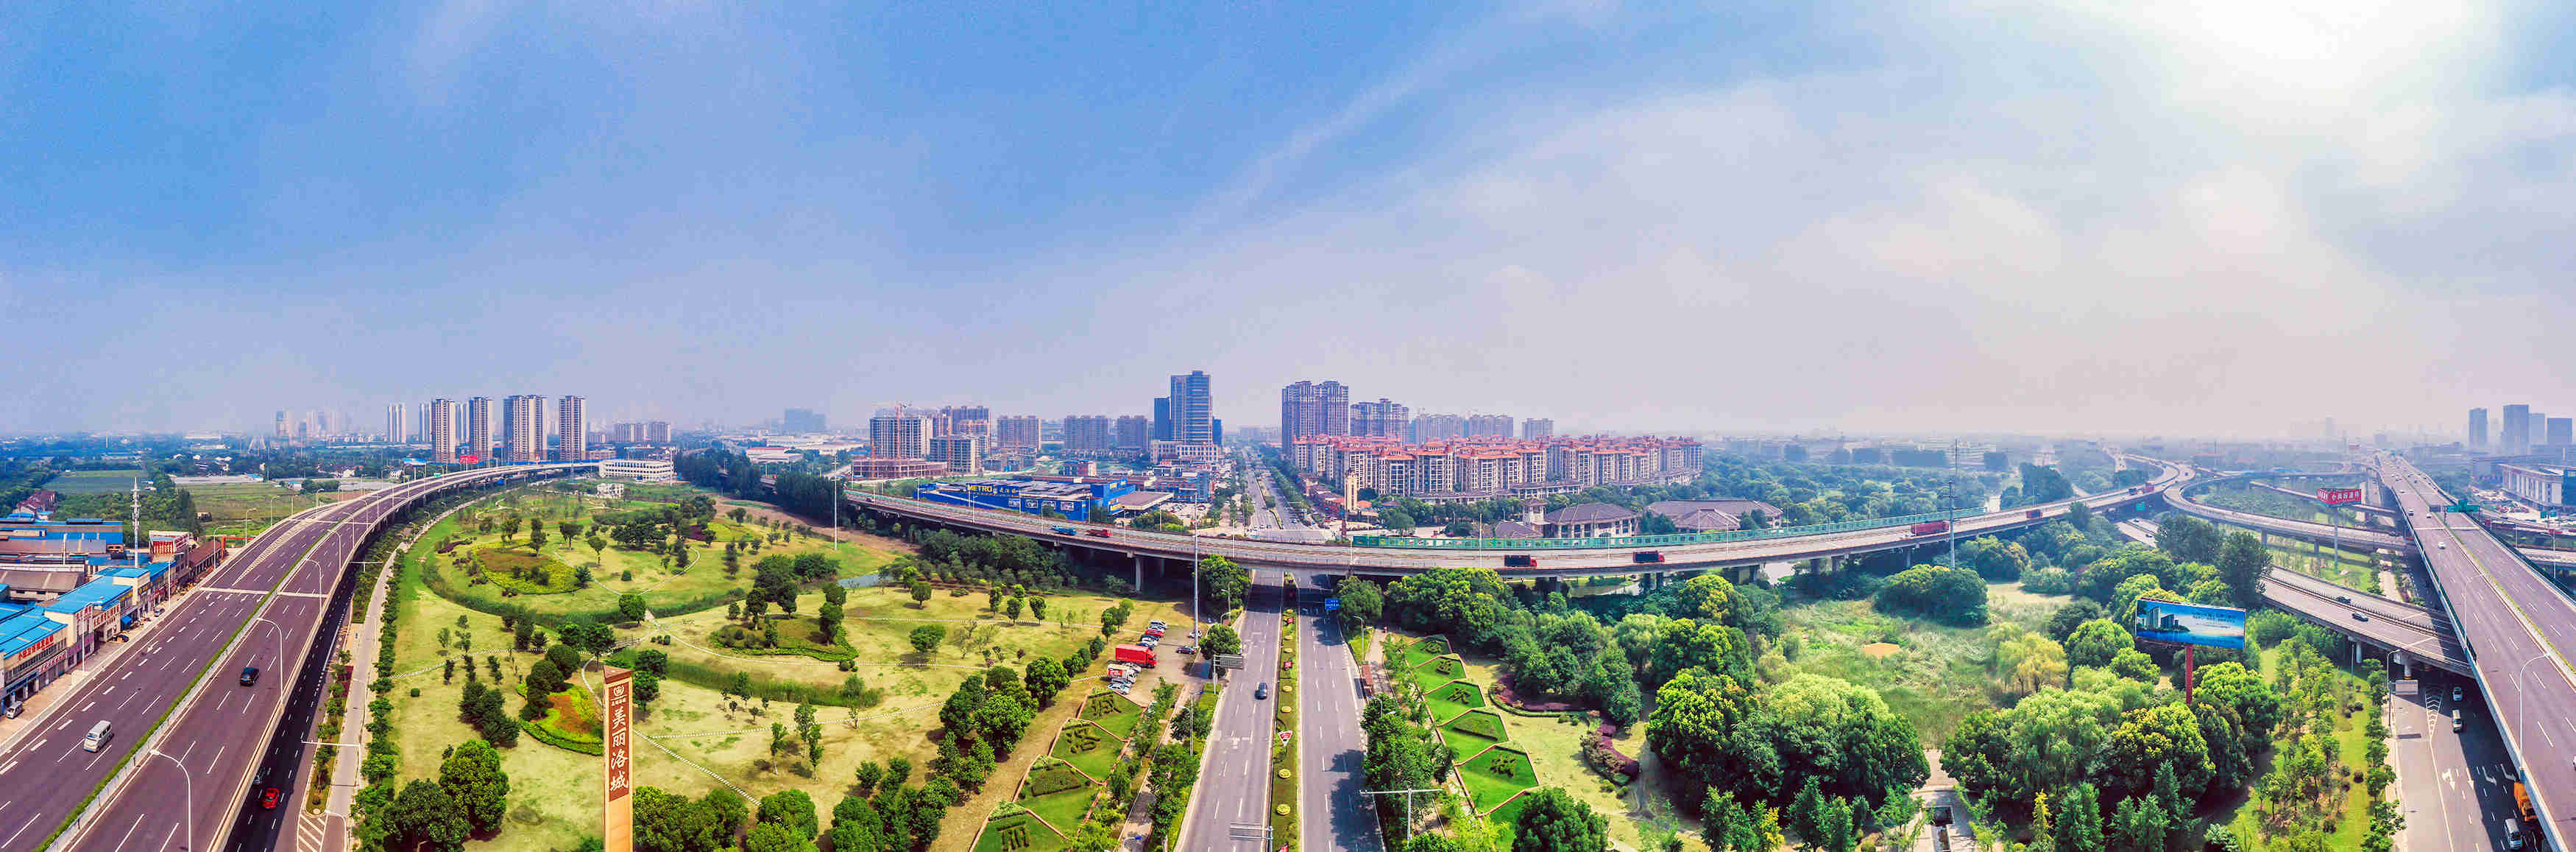 开门红投资超100亿江苏省惠山高新区筹揭牌12个重大项目开工